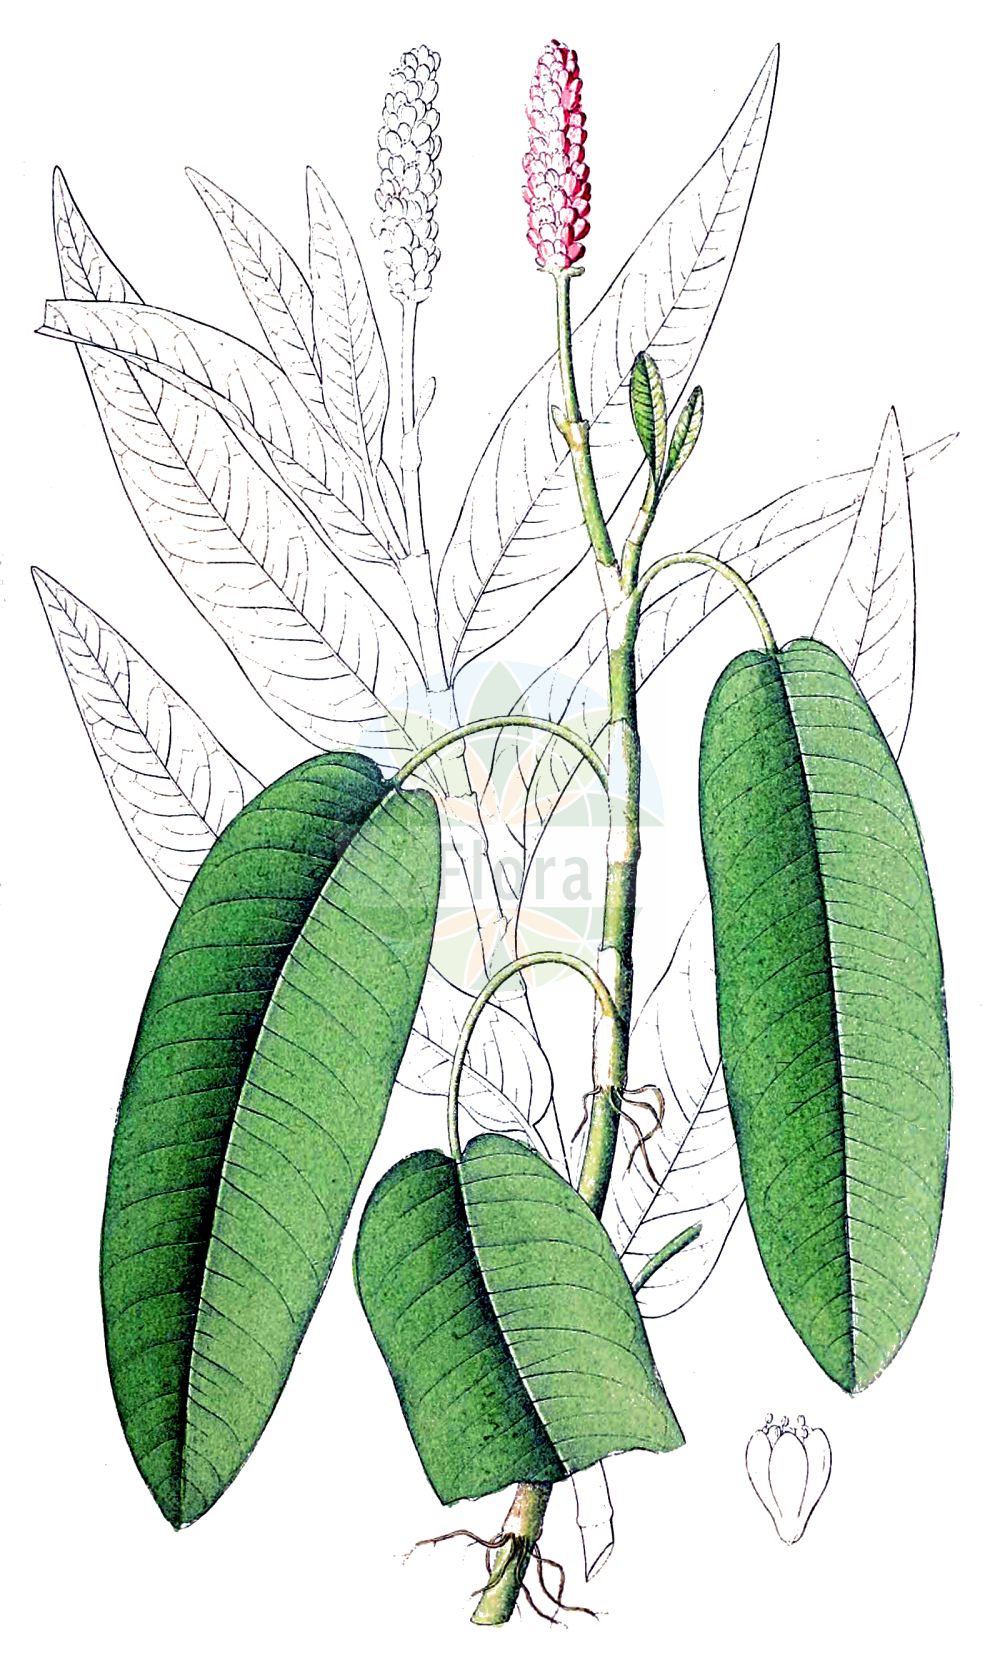 Historische Abbildung von Persicaria amphibia (Wasser-Knöterich - Amphibious Bistort). Das Bild zeigt Blatt, Bluete, Frucht und Same. ---- Historical Drawing of Persicaria amphibia (Wasser-Knöterich - Amphibious Bistort). The image is showing leaf, flower, fruit and seed.(Persicaria amphibia,Wasser-Knöterich,Amphibious Bistort,Persicaria amphibia,Polygonum amphibium,Polygonum amphibium var. terrestre,Wasser-Knoeterich,Amphibious Bistort,Water Knotweed,Devil's Shoestring,Perennial Knotgrass,Shoestringweed,Swamp Smartweed,Water Smartweed,Willow Grass,Persicaria,Knöterich,Knotgrass,Polygonaceae,Knöterichgewächse,Knotgrass family,Blatt,Bluete,Frucht,Same,leaf,flower,fruit,seed,Dietrich (1833-1844))